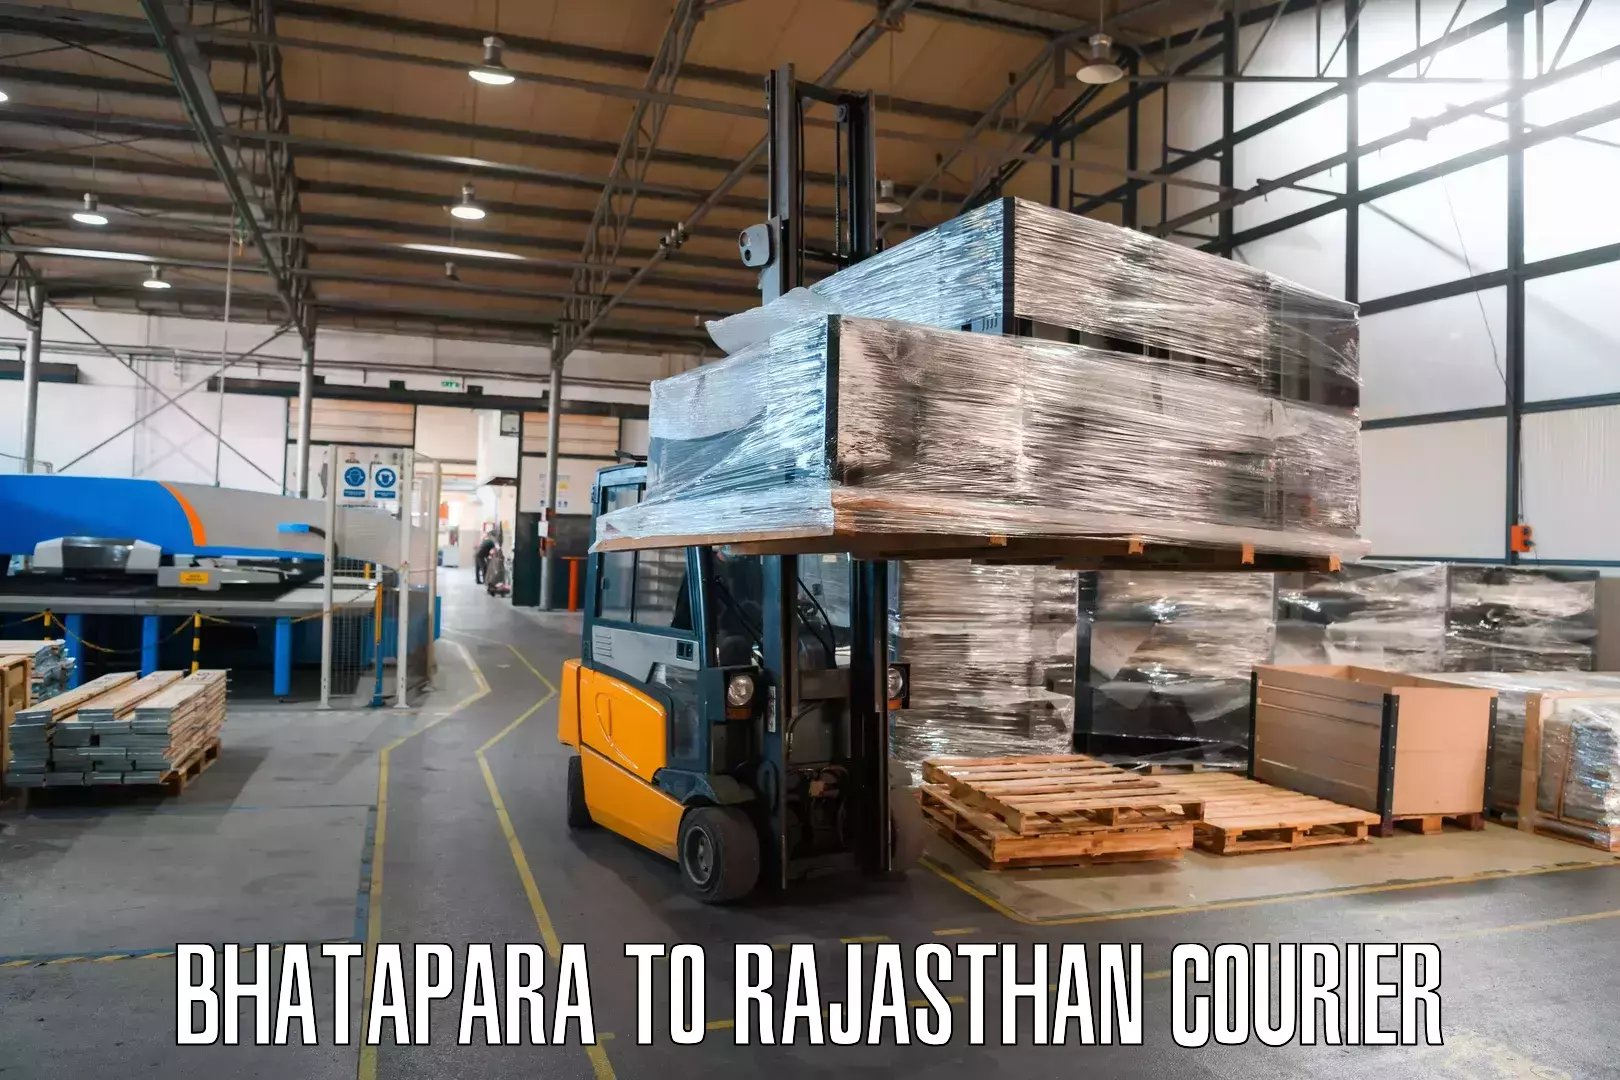 Digital courier platforms Bhatapara to Tarnau